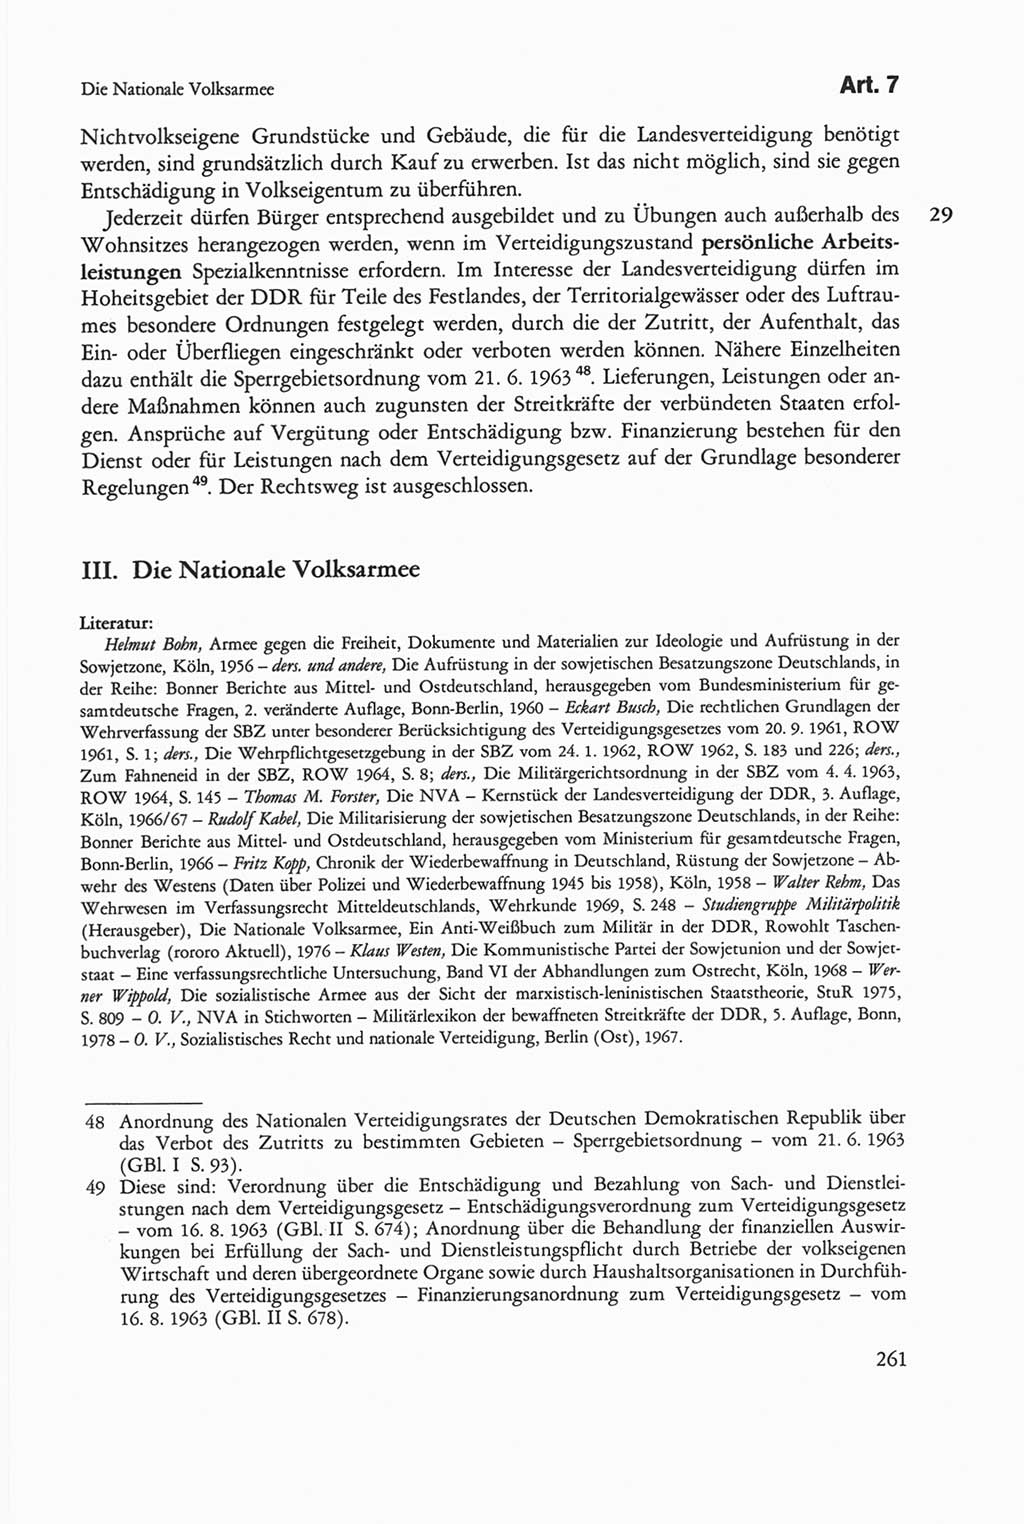 Die sozialistische Verfassung der Deutschen Demokratischen Republik (DDR), Kommentar mit einem Nachtrag 1997, Seite 261 (Soz. Verf. DDR Komm. Nachtr. 1997, S. 261)